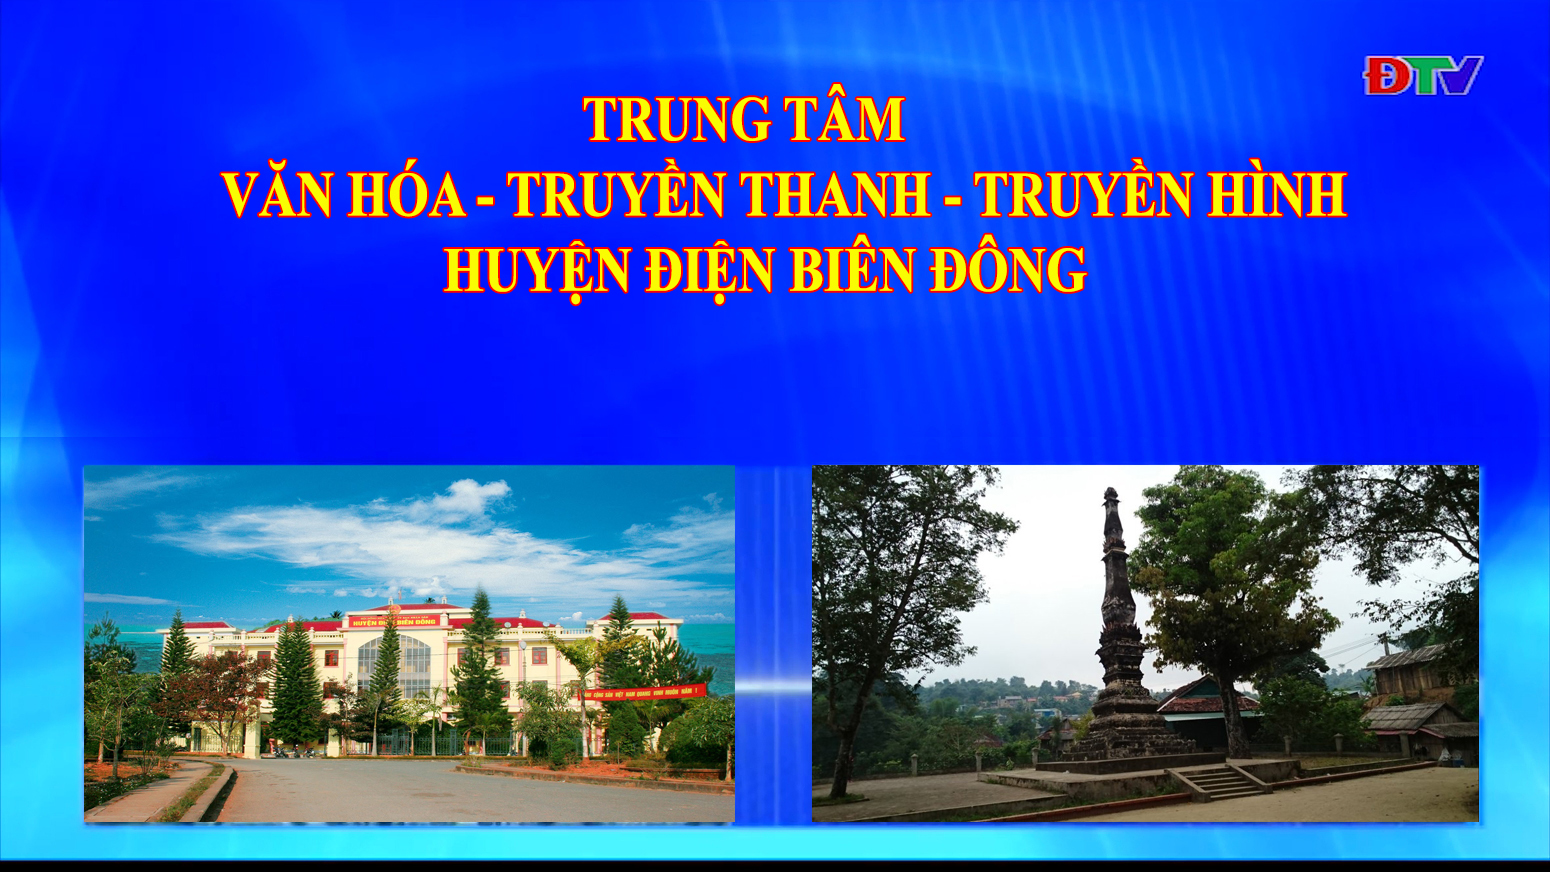 Trung tâm VH-TTTH huyện Điện Biên Đông (Ngày 10-9-2022)